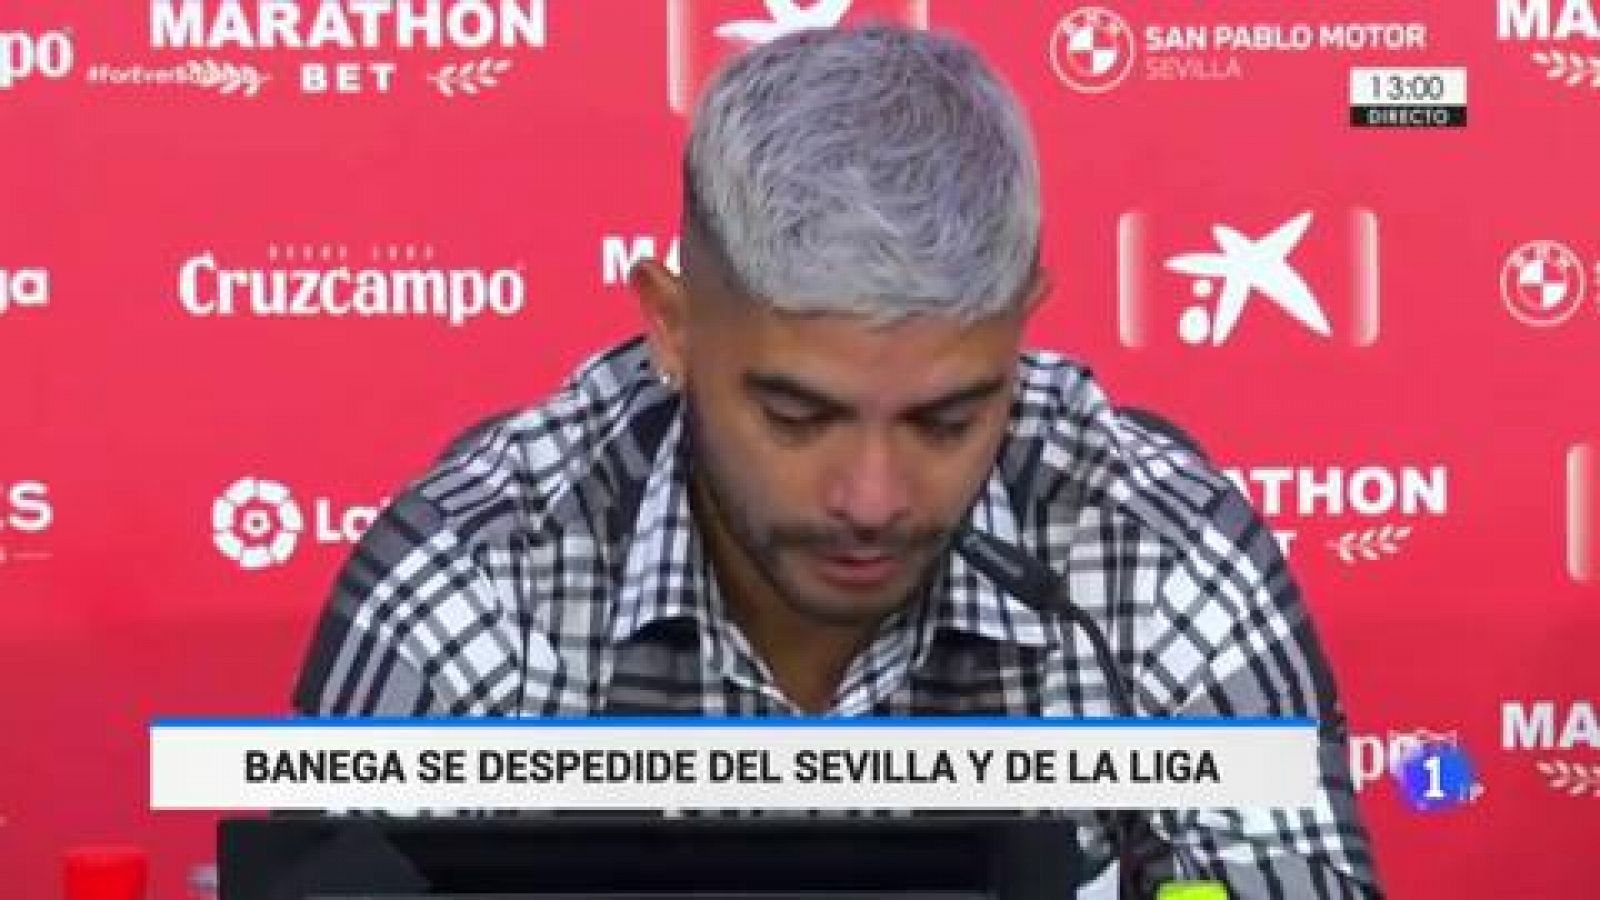 Fútbol | Ever Banega, emocionado, se despide del Sevilla y La Liga